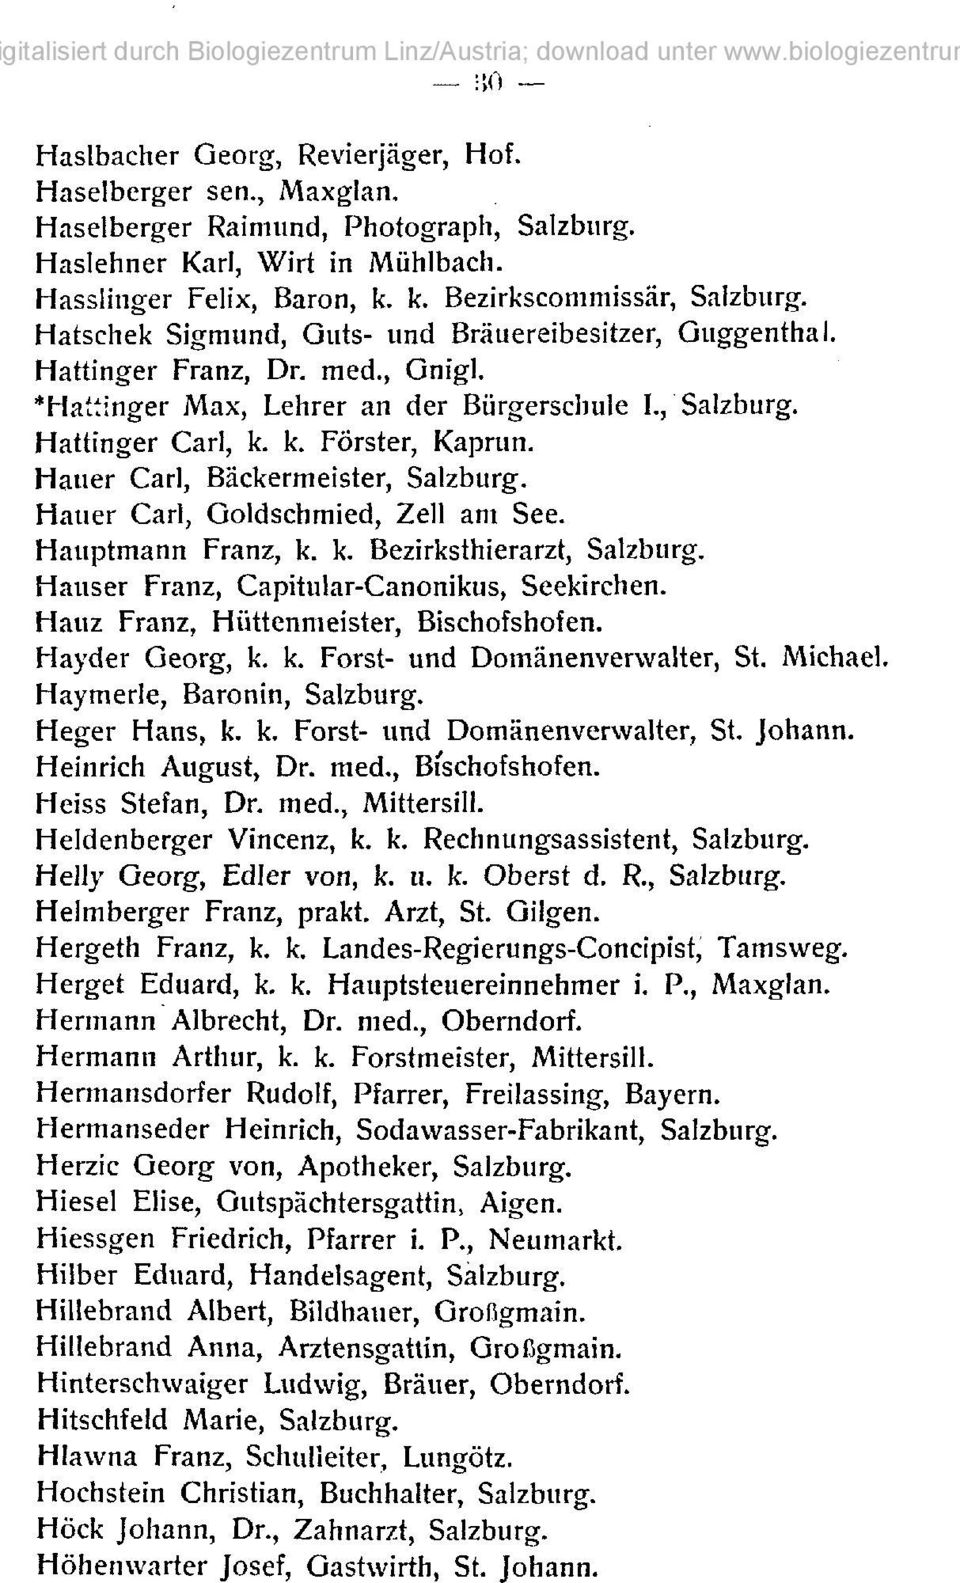 Hauer Carl, Bäckermeister, Salzburg. Hauer Carl, Goldschmied, Zeil am See. Hauptmann Franz, k. k. Bezirksthierarzt, Salzburg. Hauser Franz, Capitular-Canonikus, Seekirchen.